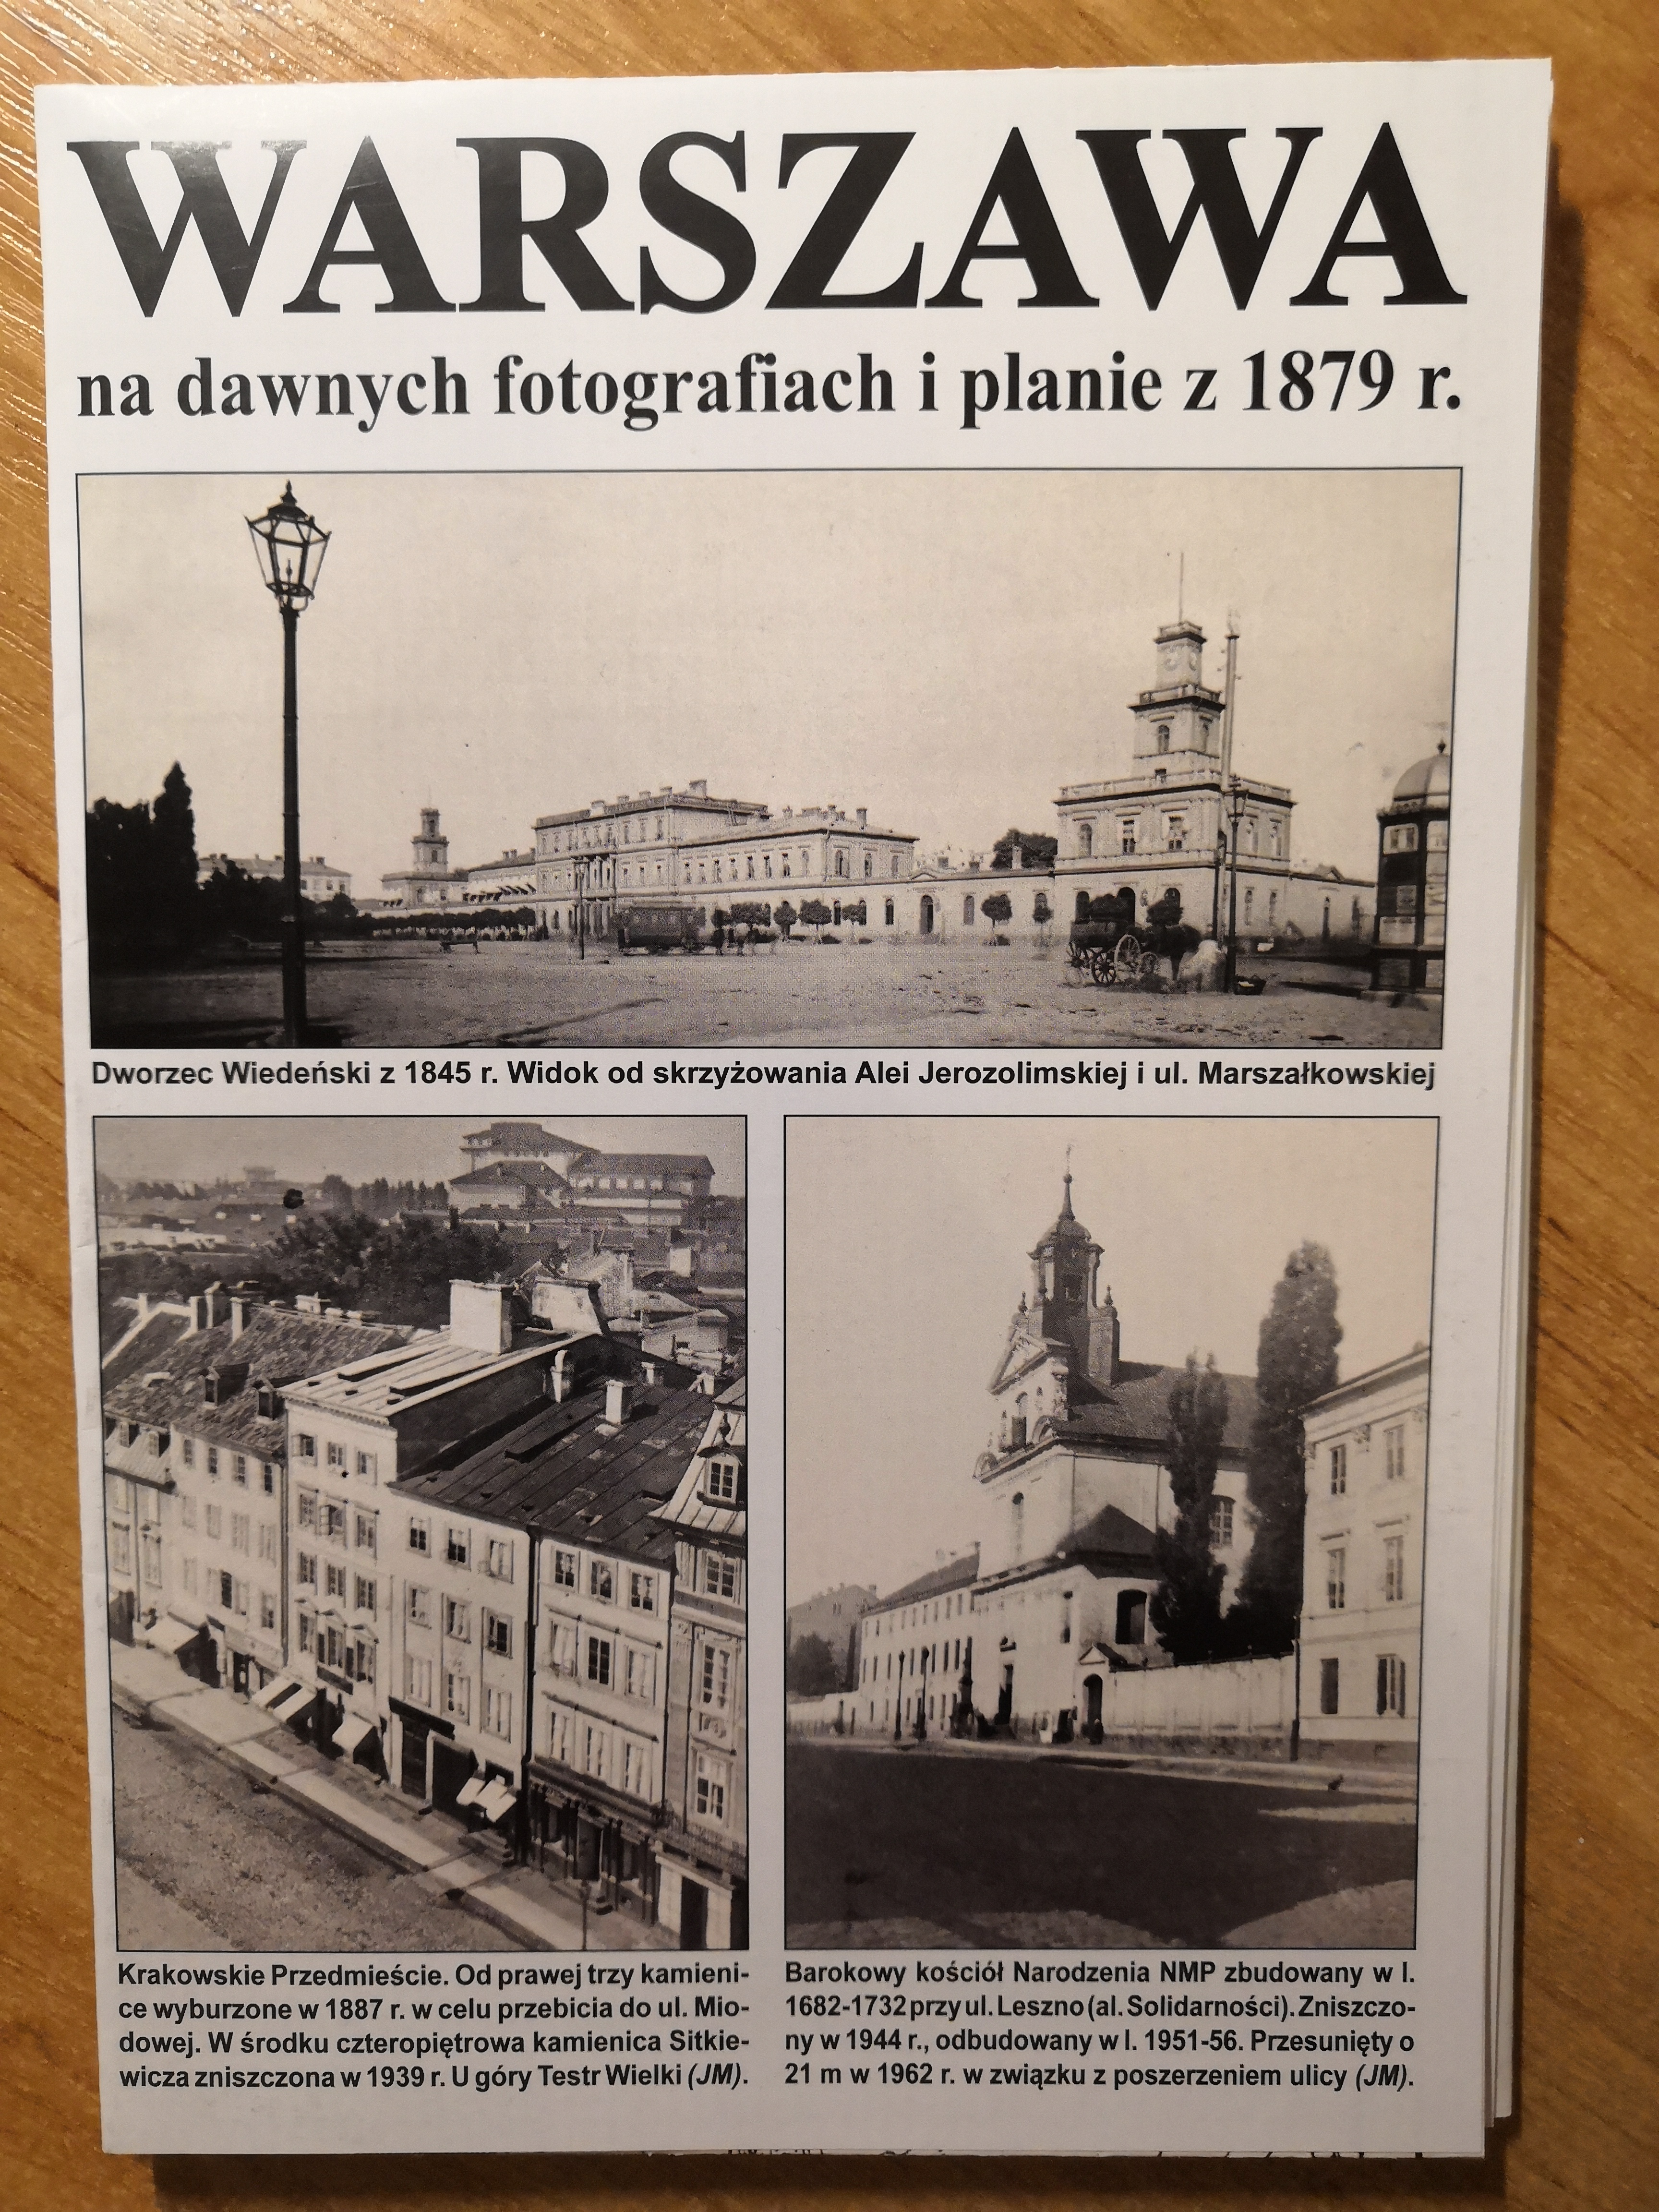 Warszawa na dawnych fotografiach i planie z 1879 r. (J.A.Krawczyk)